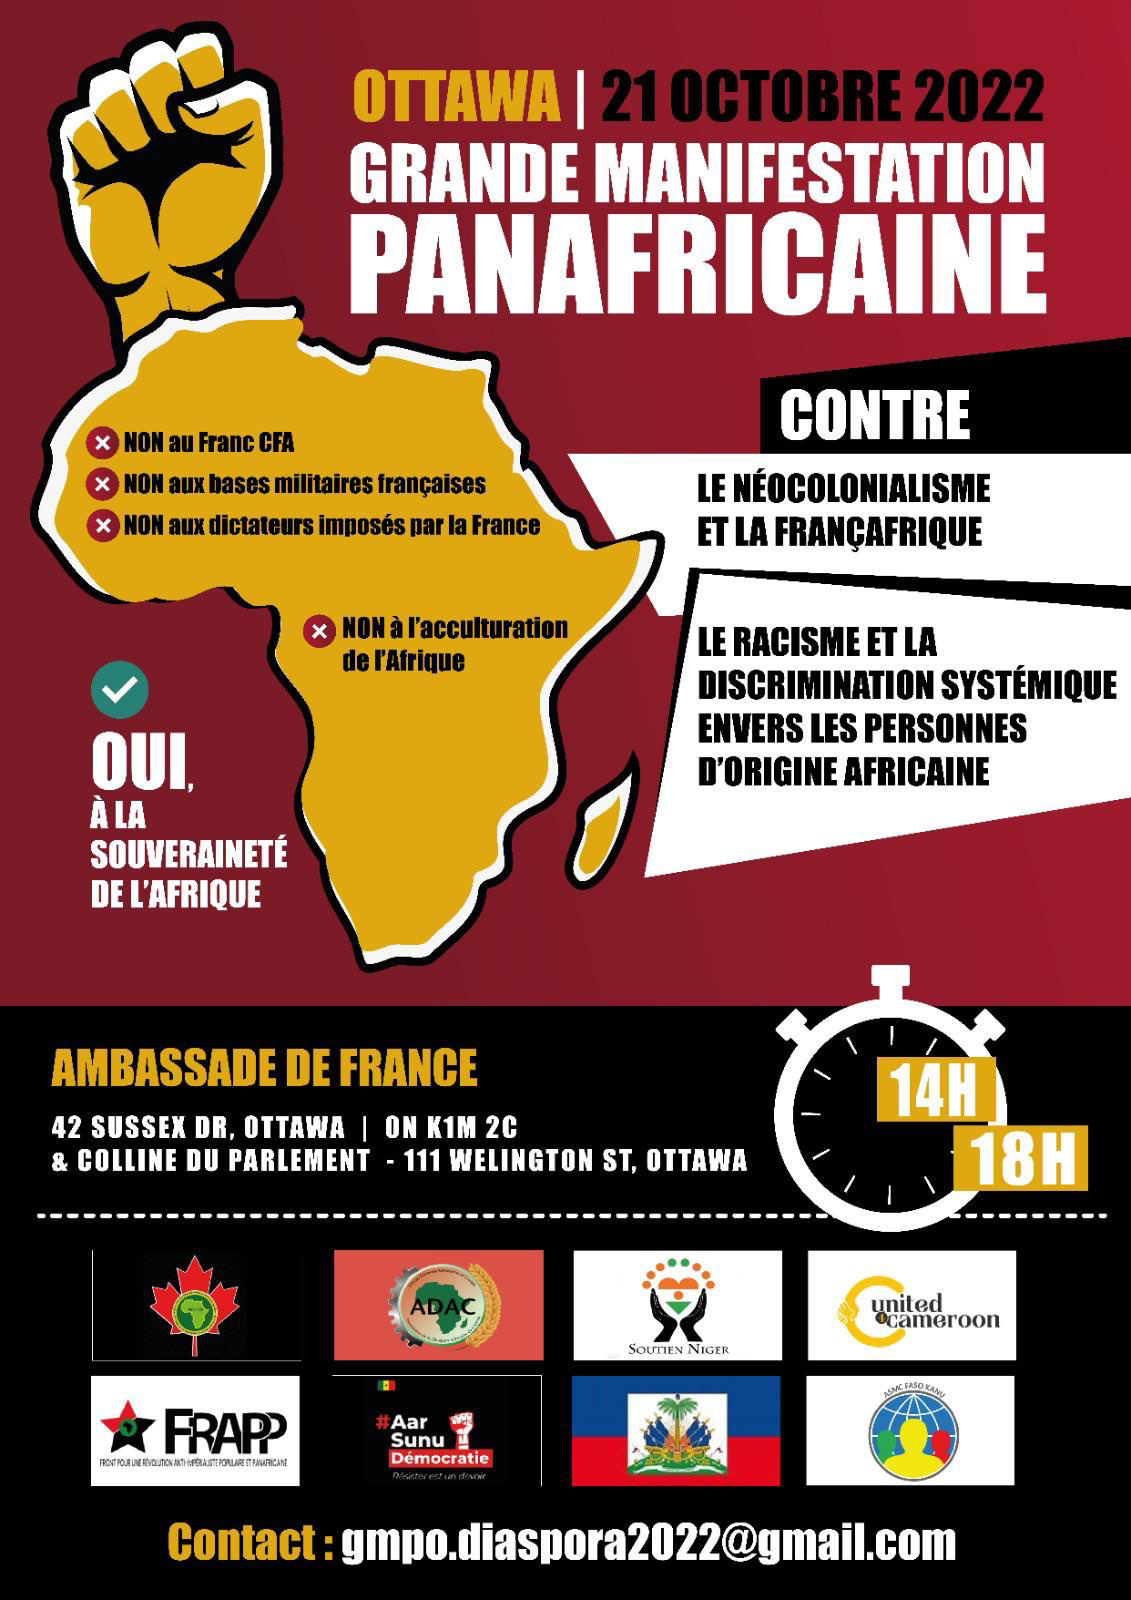 Manifestation Panafricaine à Ottawa ON Canada, le 21 octobre 2022 contre le néocolonialisme, la françafrique, le racisme et la discrimination systémique envers les personnes et les peuples d'origine africaine